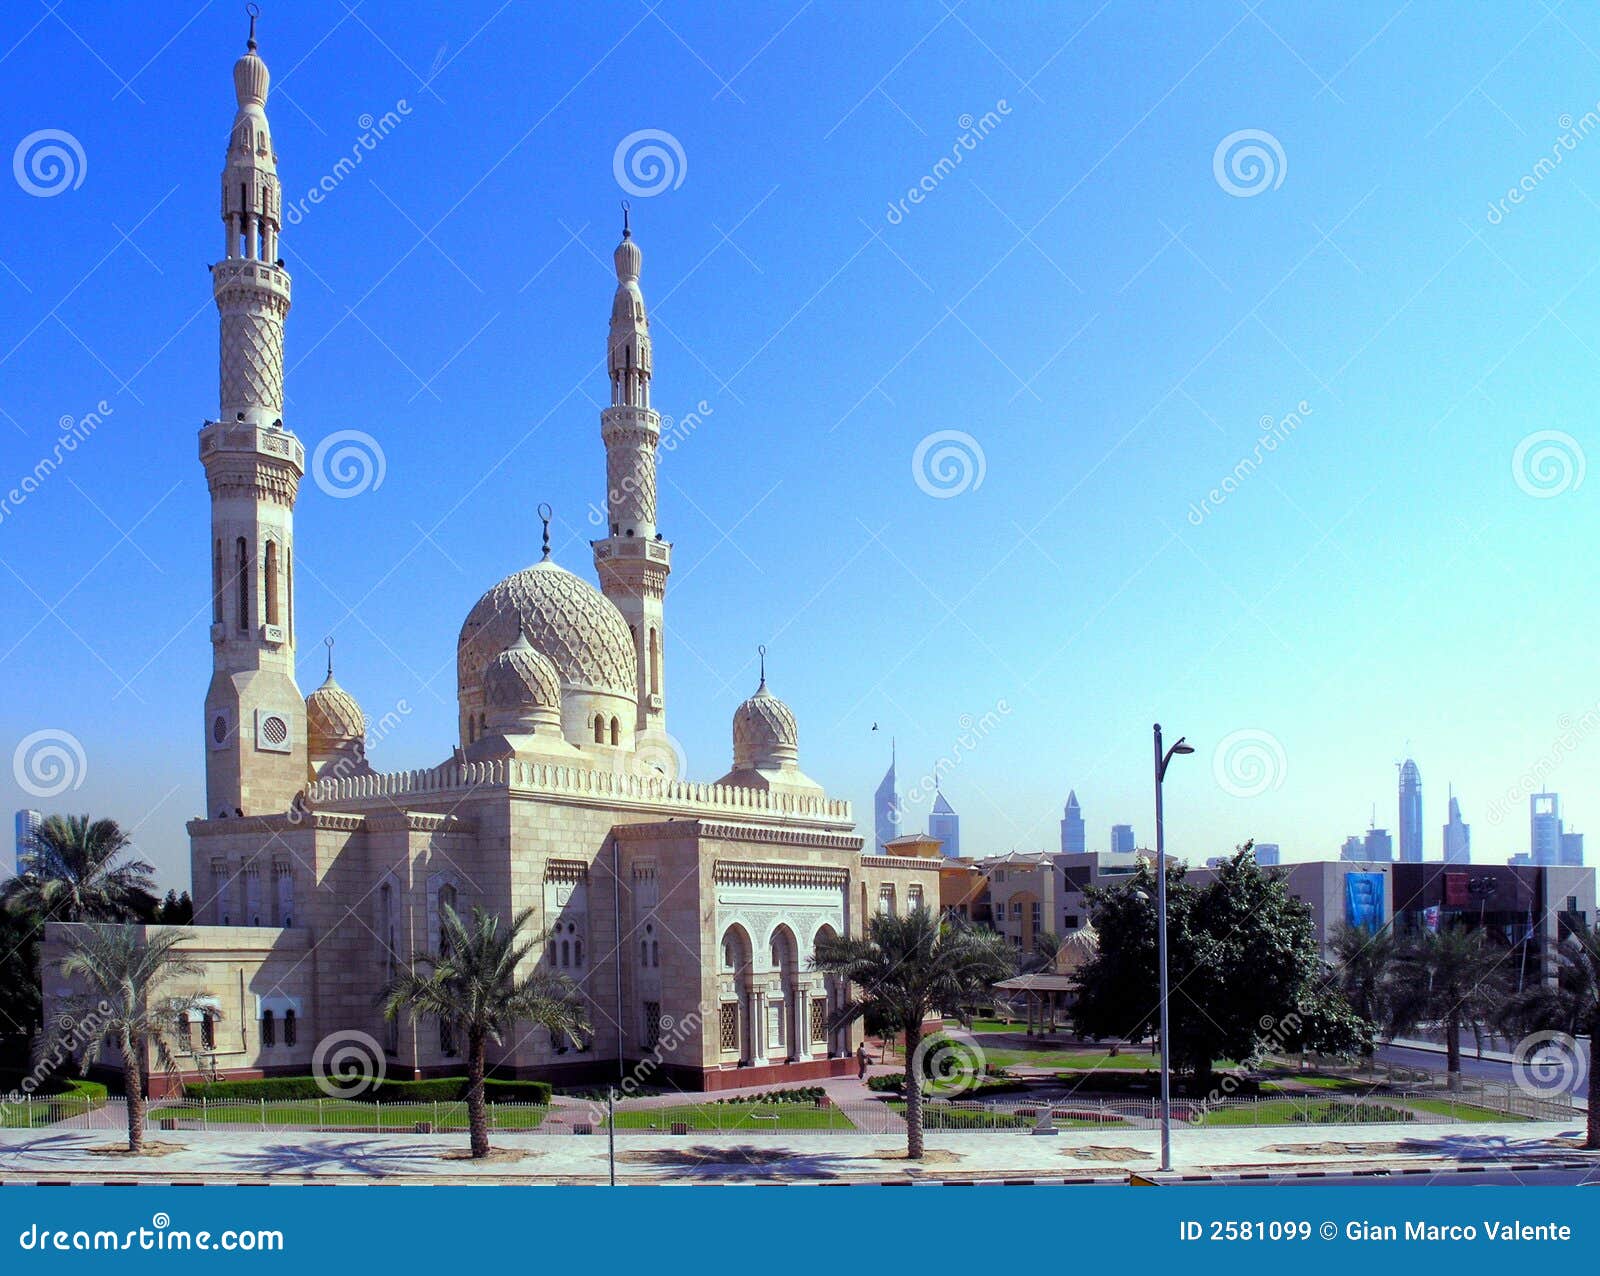 jumeirah mosque